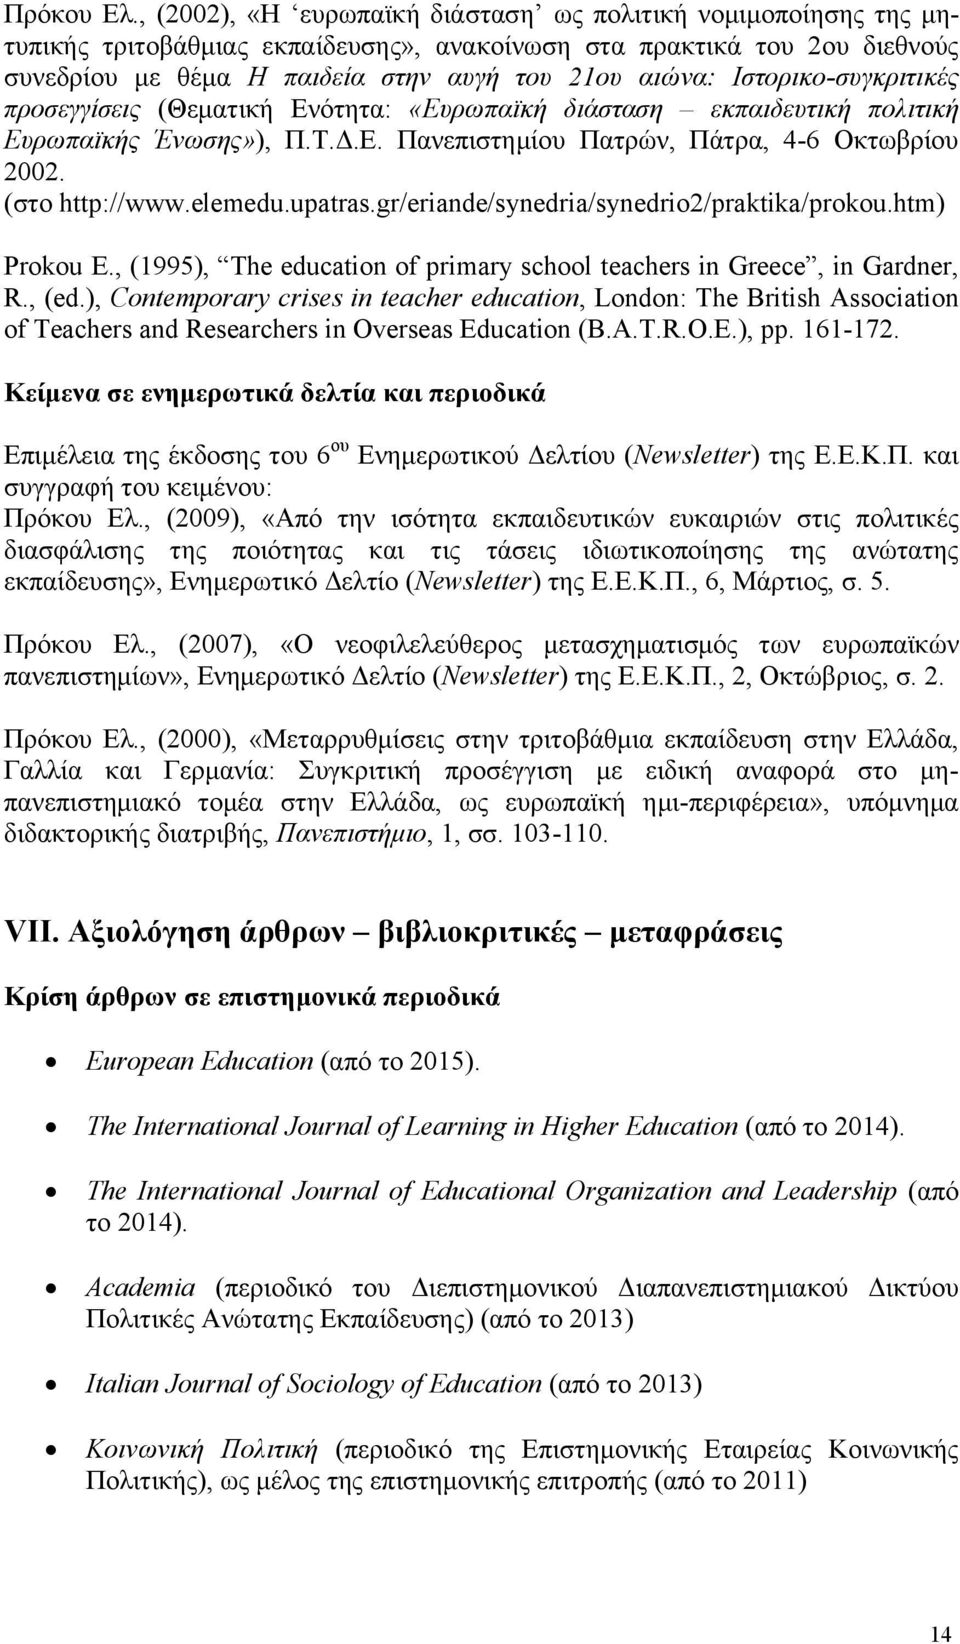 Ιστορικο-συγκριτικές προσεγγίσεις (Θεματική Ενότητα: «Ευρωπαϊκή διάσταση εκπαιδευτική πολιτική Ευρωπαϊκής Ένωσης»), Π.Τ.Δ.Ε. Πανεπιστημίου Πατρών, Πάτρα, 4-6 Οκτωβρίου 2002. (στο http://www.elemedu.